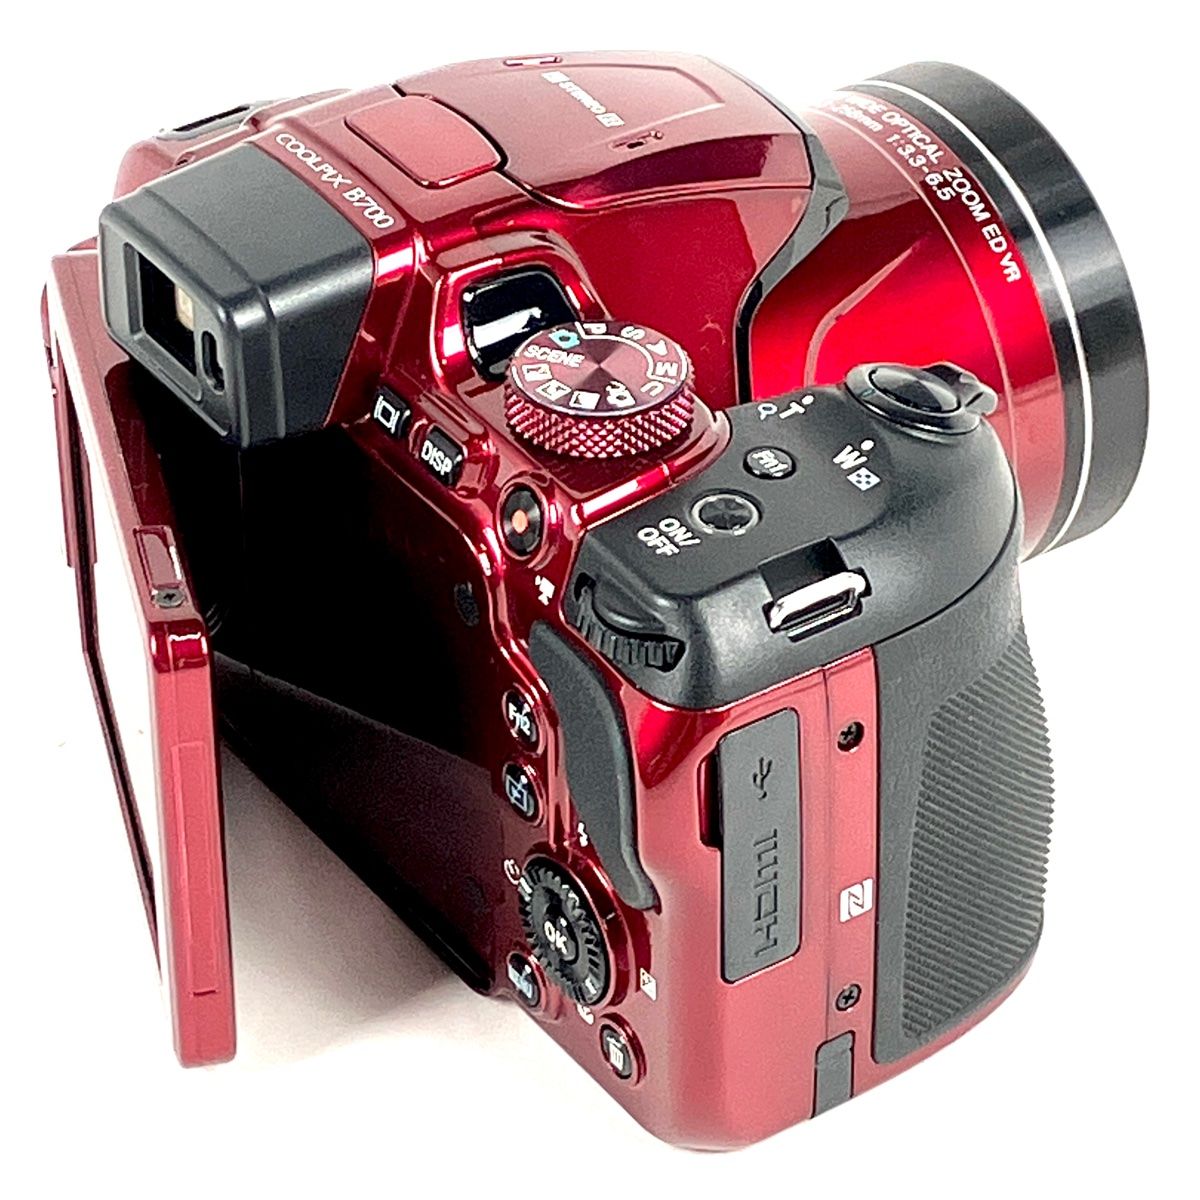 ニコン Nikon COOLPIX B700 コンパクトデジタルカメラ 【中古】 - メルカリ